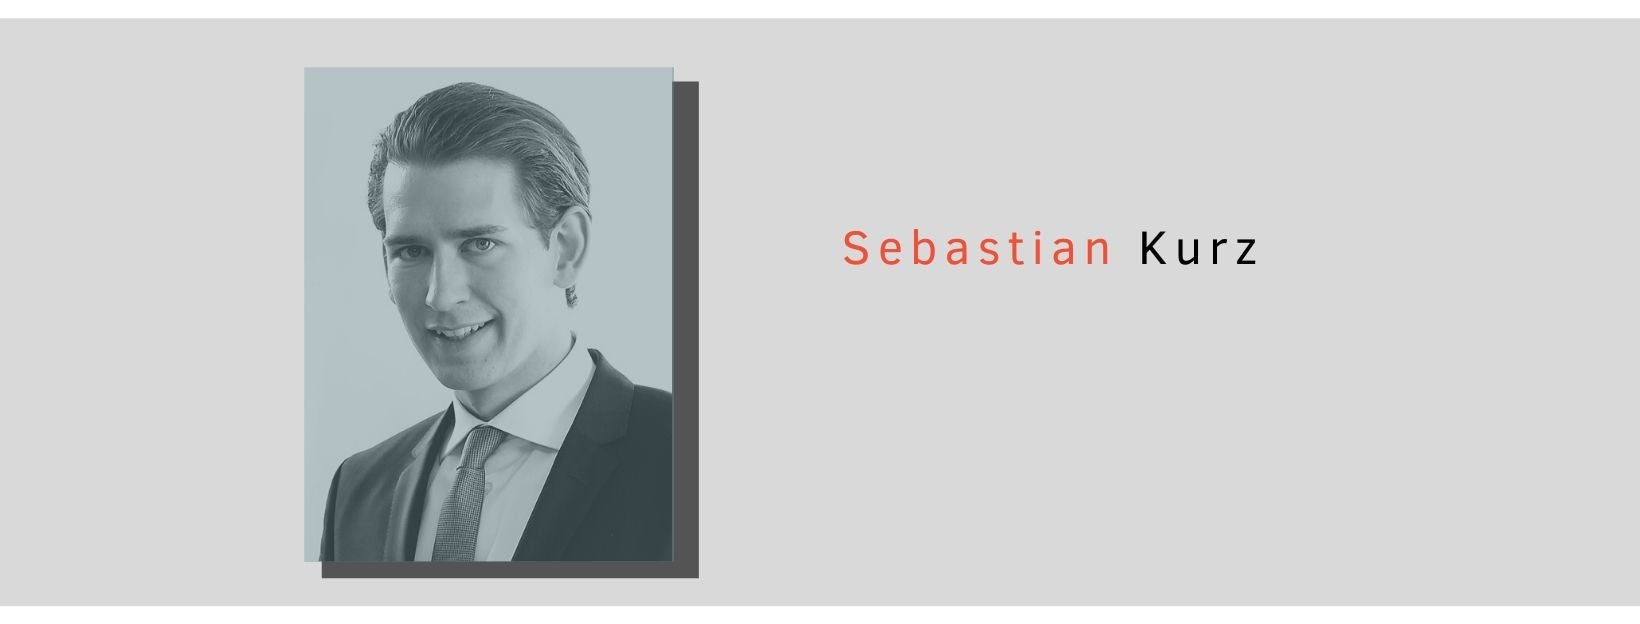 Sebastian Kurz portrait